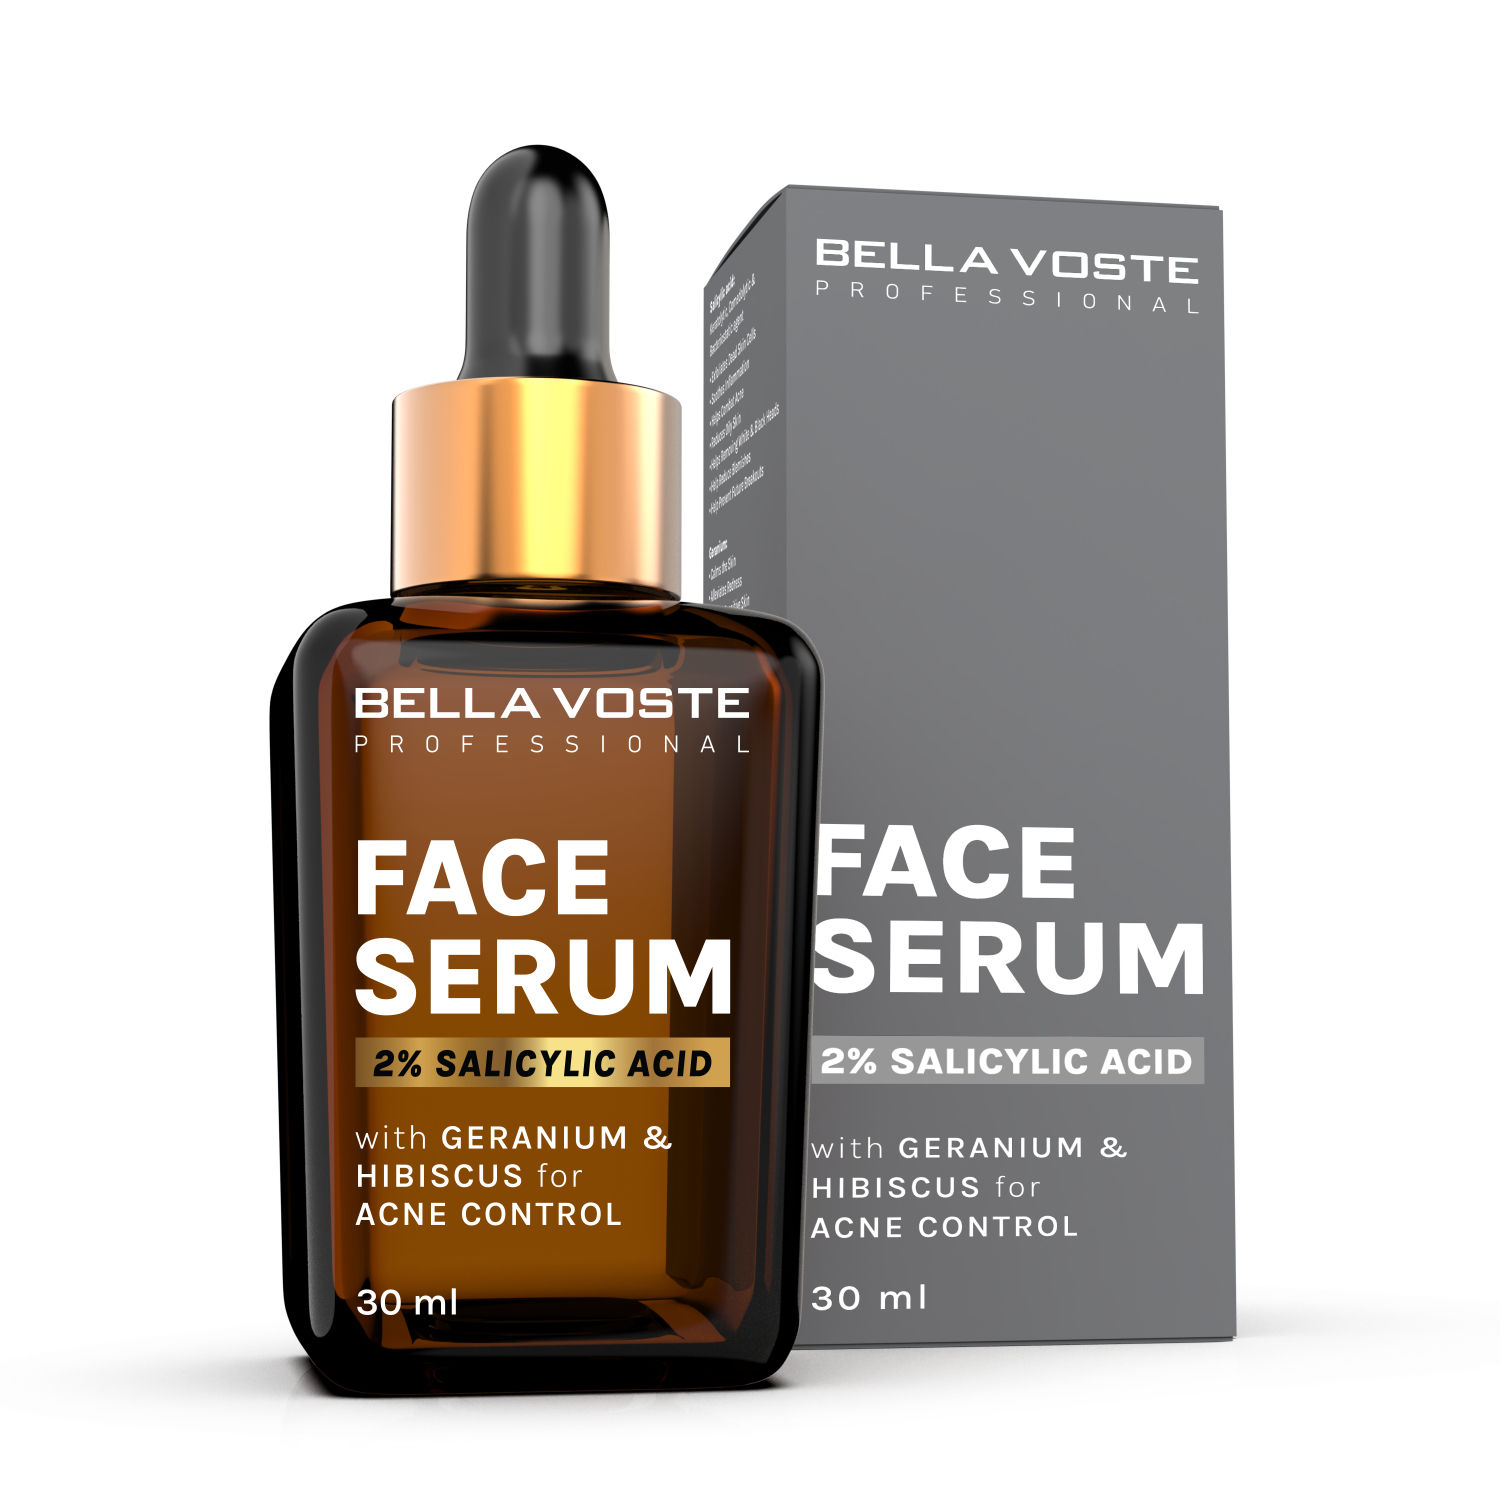 Buy Bella voste Professional 2% SALICYLIC ACID Face Serum with GERANIUM & HIBISCUS for ACNE CONTROL - Purplle